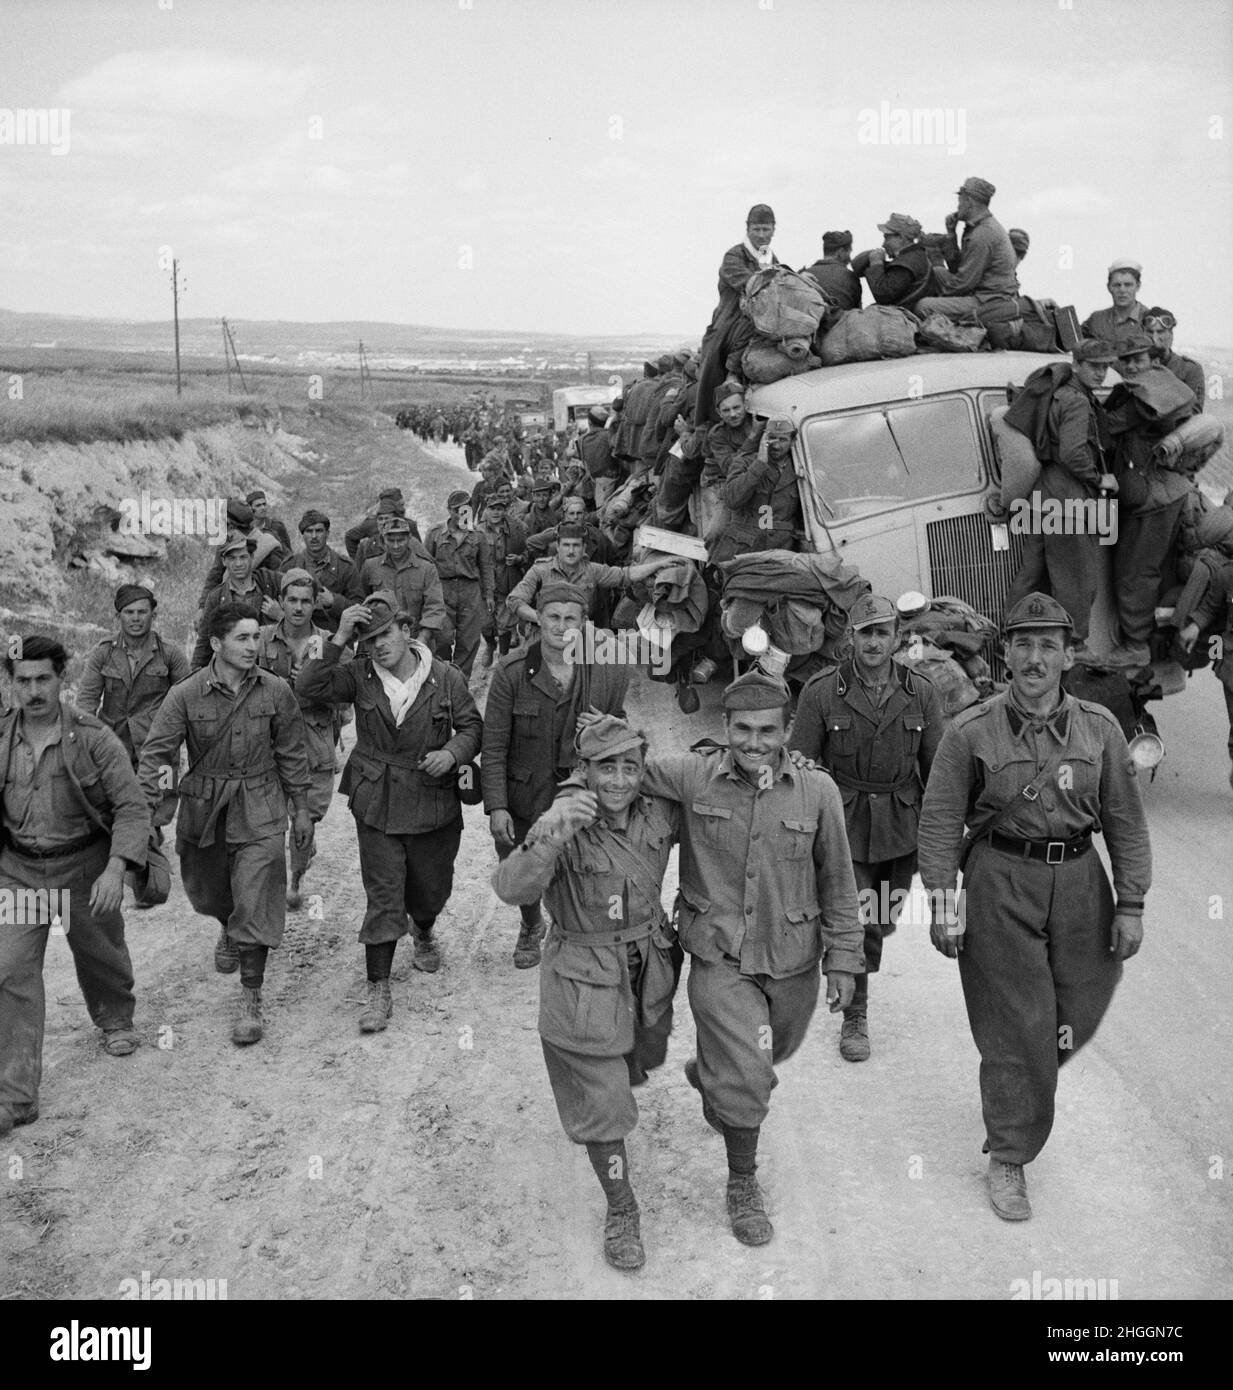 Une photo vintage vers mai 1943 des soldats italiens vaincus pris comme prisonniers de guerre dans un camp d'internement après la bataille de Tunis et la défaite des Korps allemands Afrika Banque D'Images